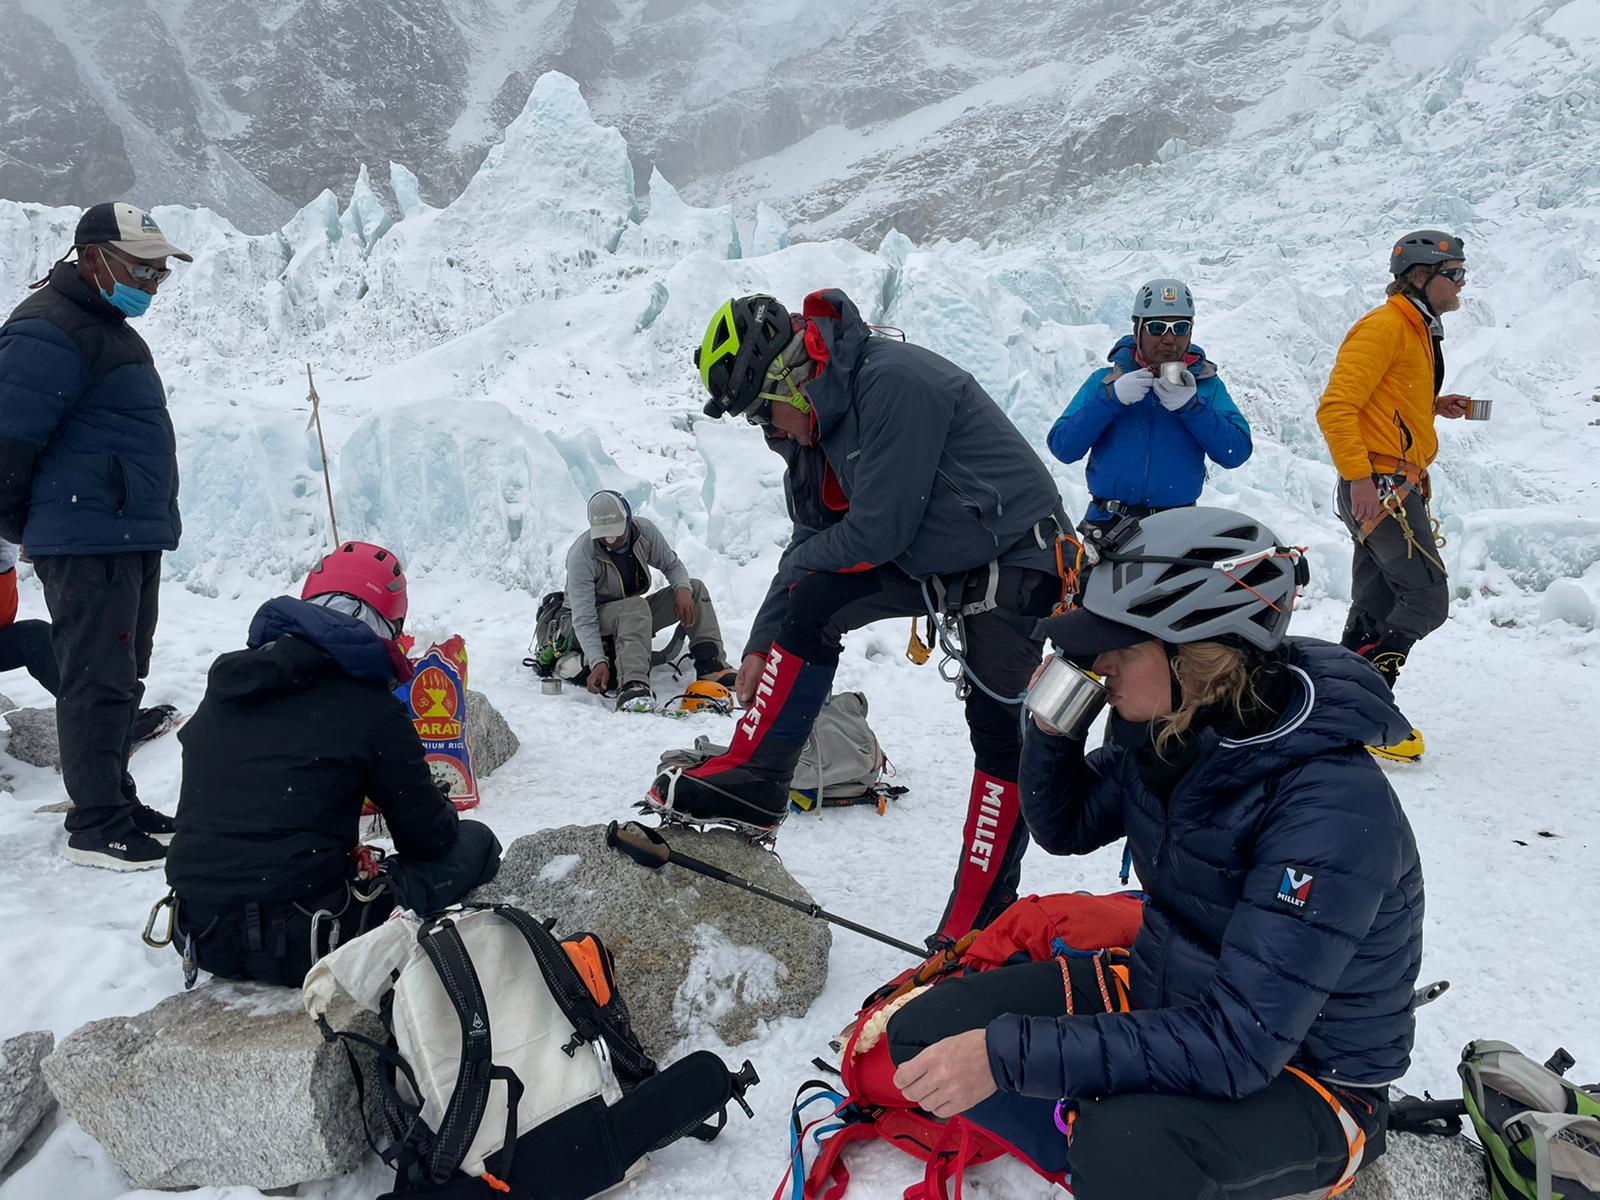 Expedition à l'Everest - Traversée de l'Icefall